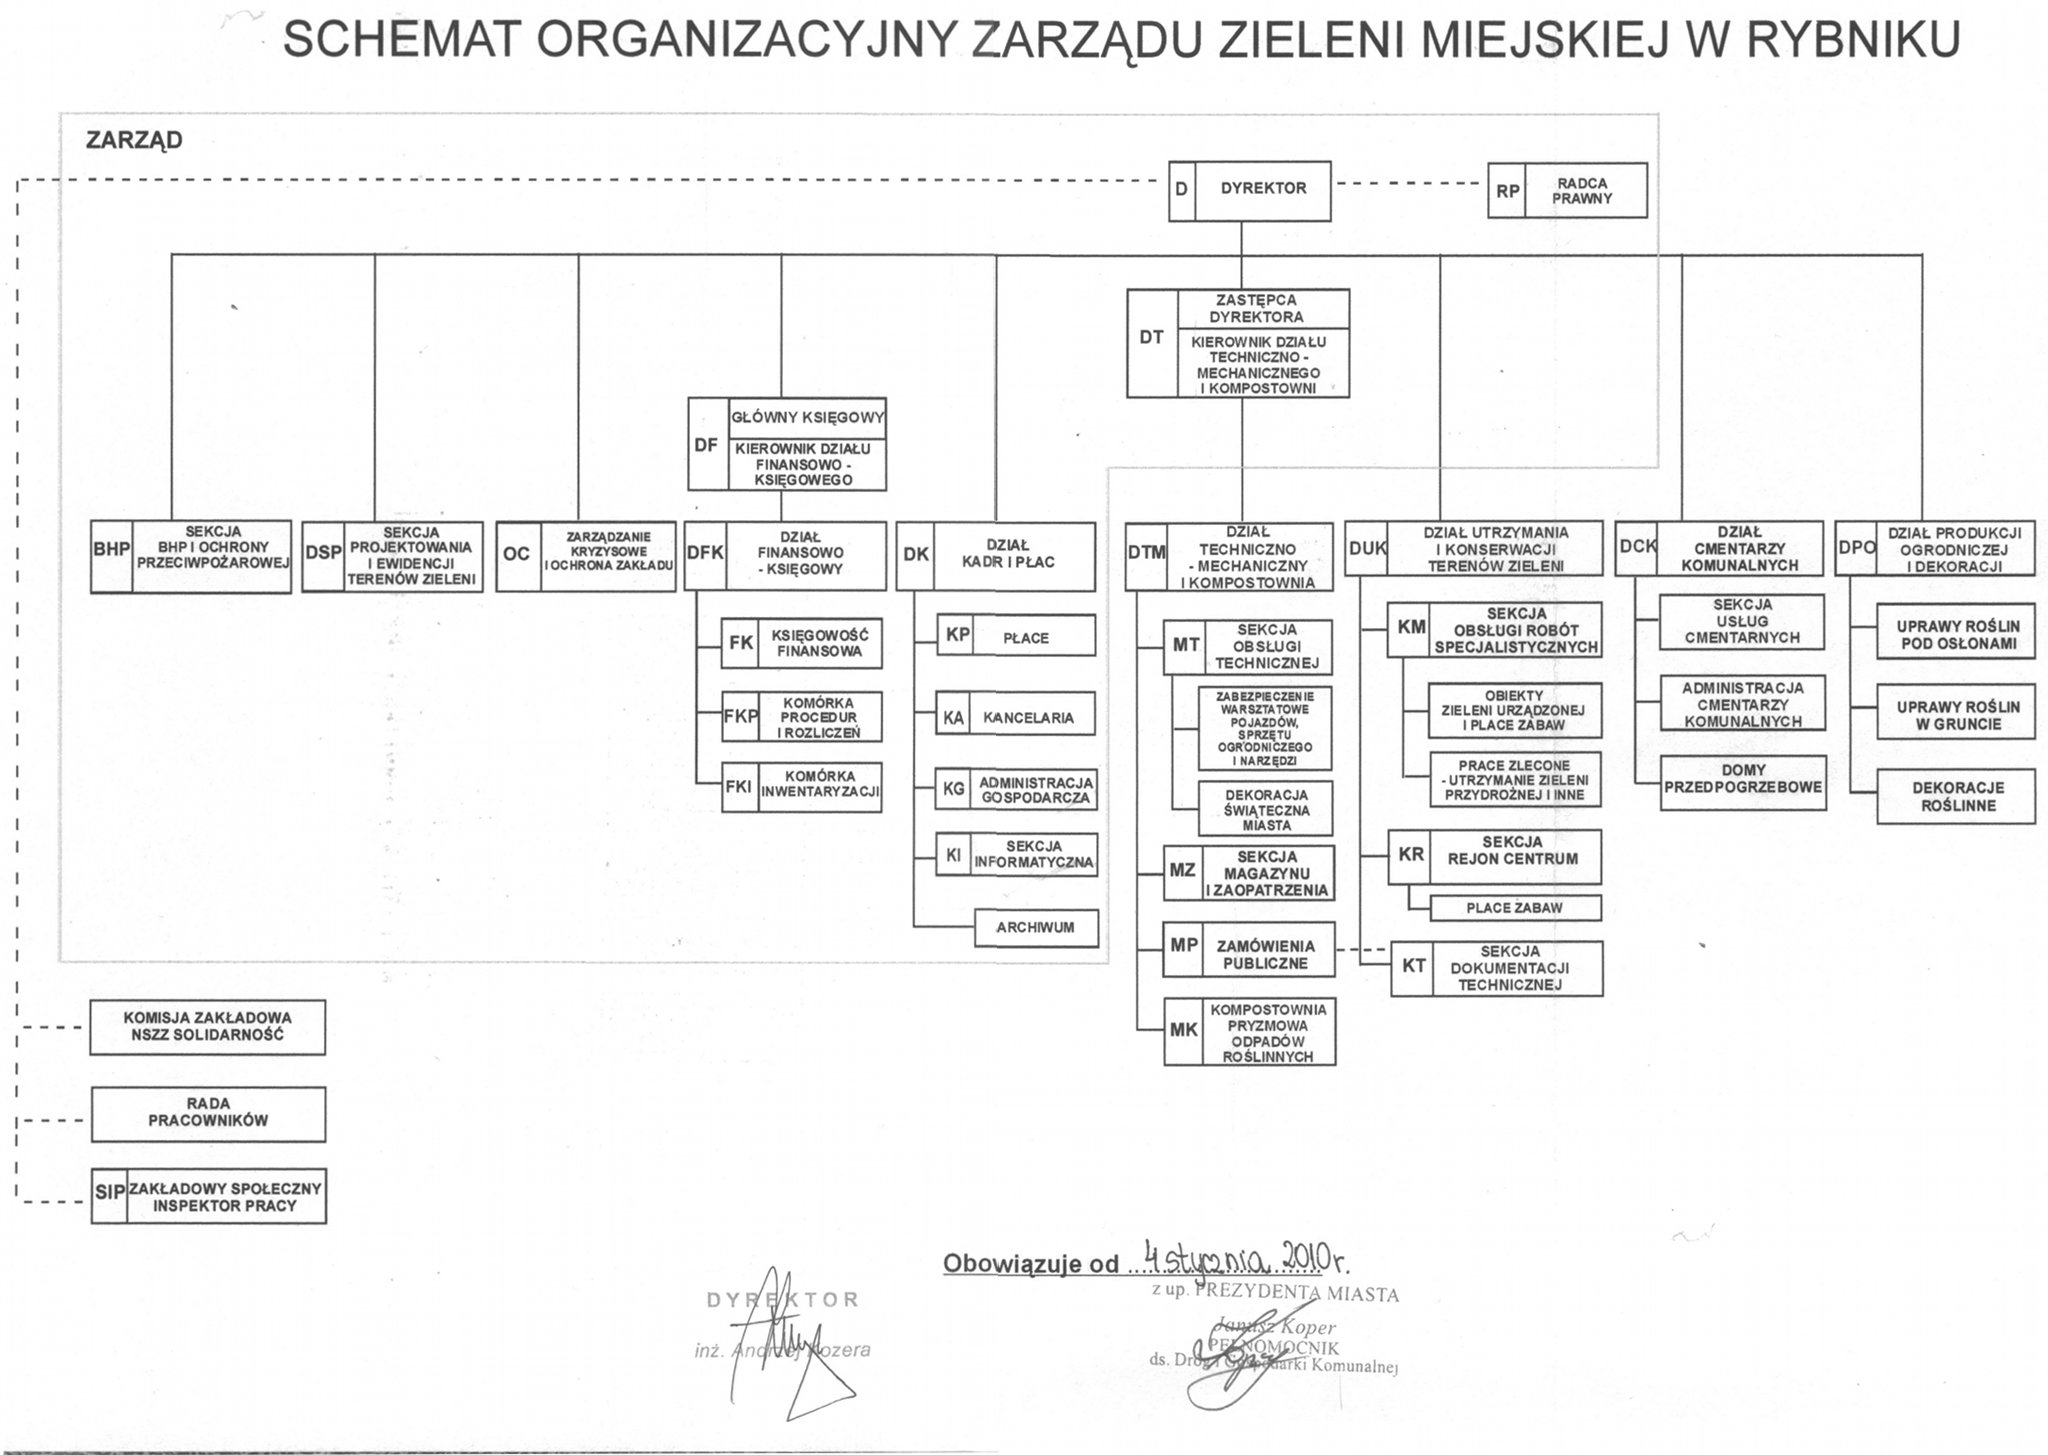 Schemat Organizacyjny Zarządu Zieleni Miejskiej w Rybniku